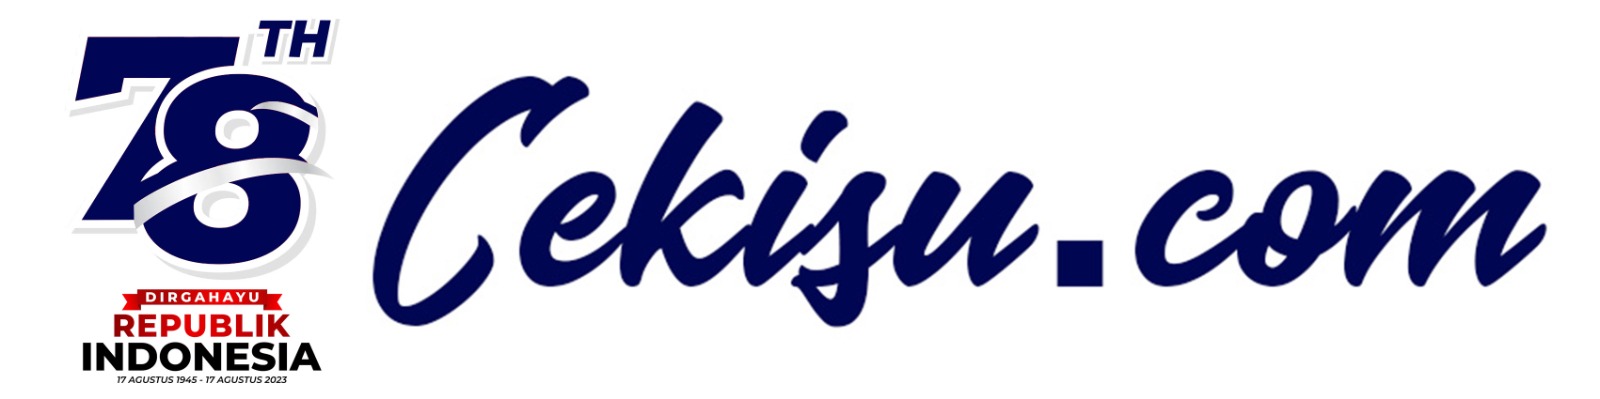 Cekisu.com